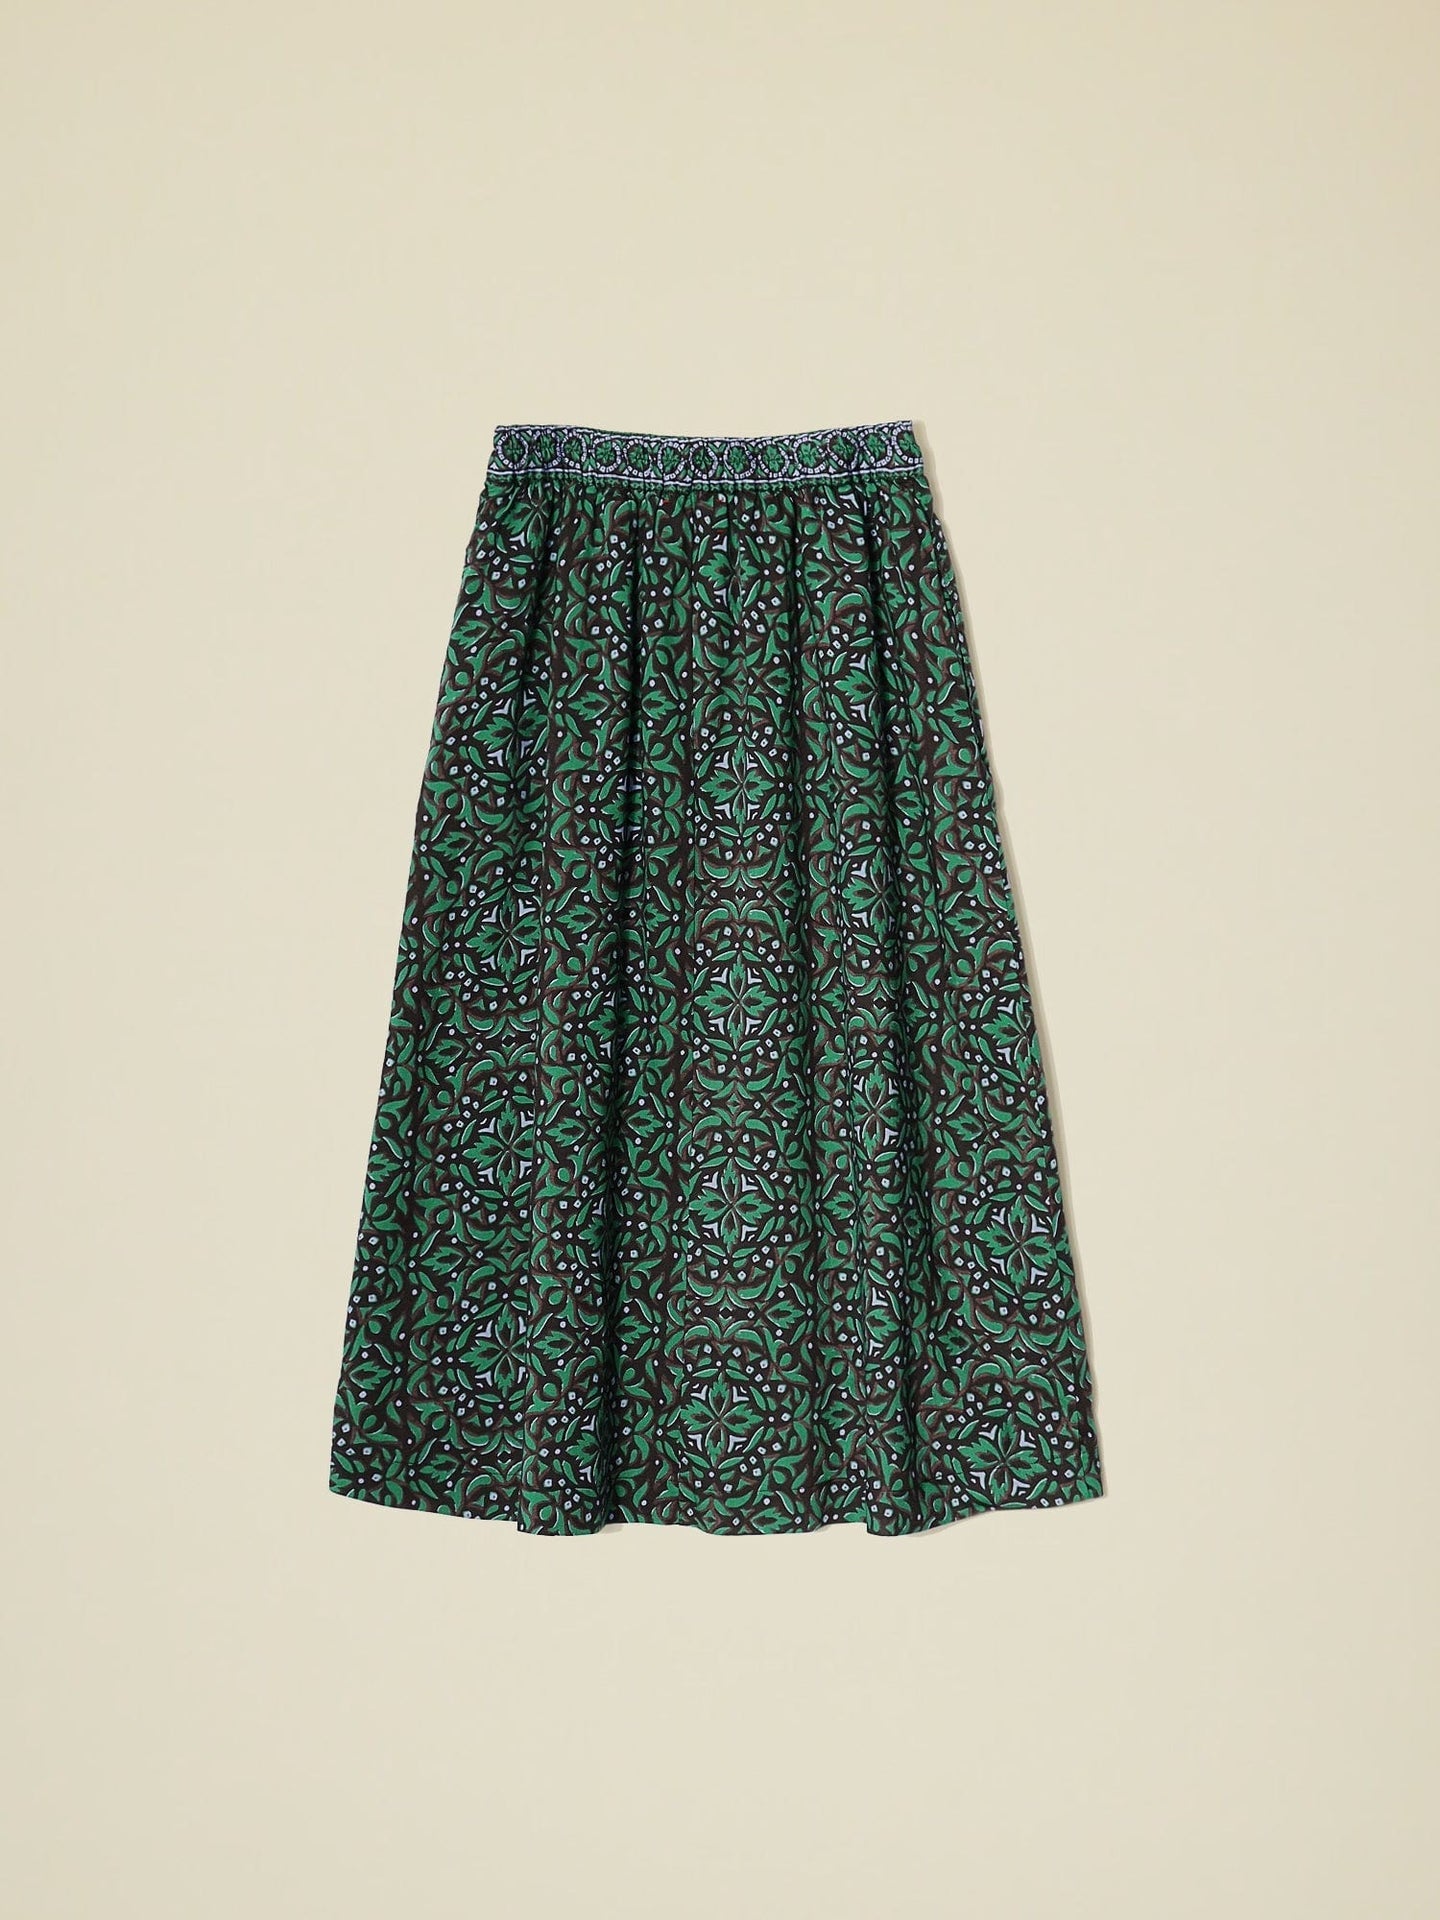 Tannis Skirt - Green Smoke